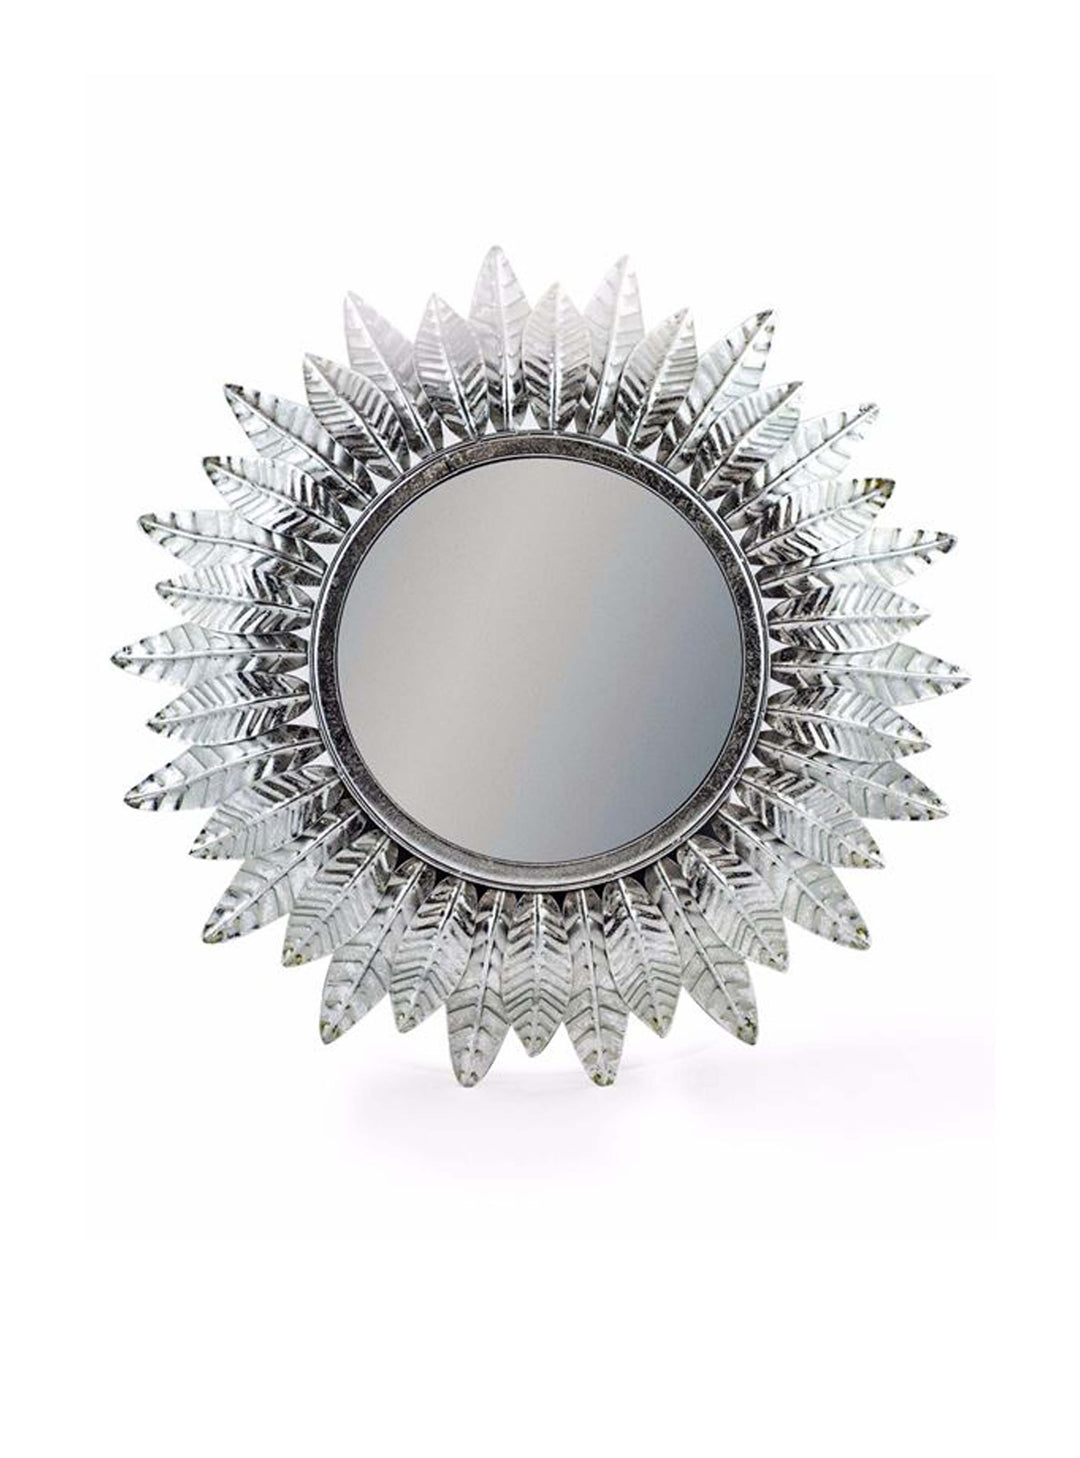 Hollywood Regency Feather Leaf Mirror – Small Silver Leaf Sun Convex Mirror